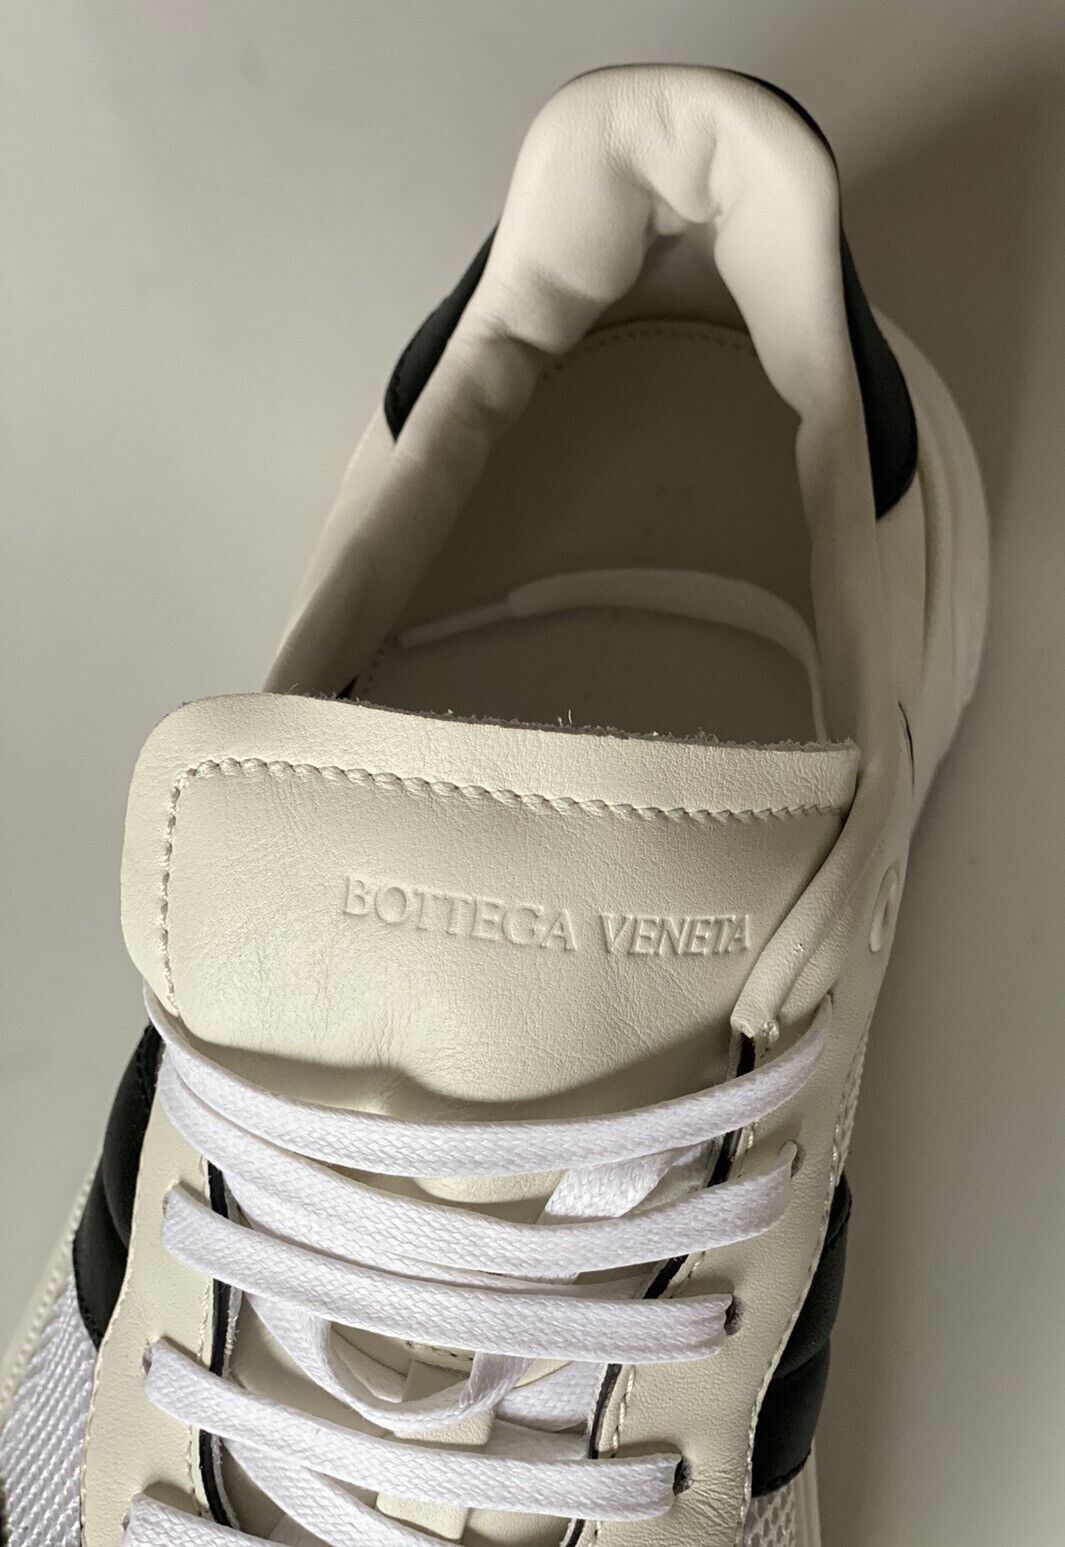 NIB $790 Bottega Veneta Men's Leather & Mesh Sneakers White/Black 11 US 565646